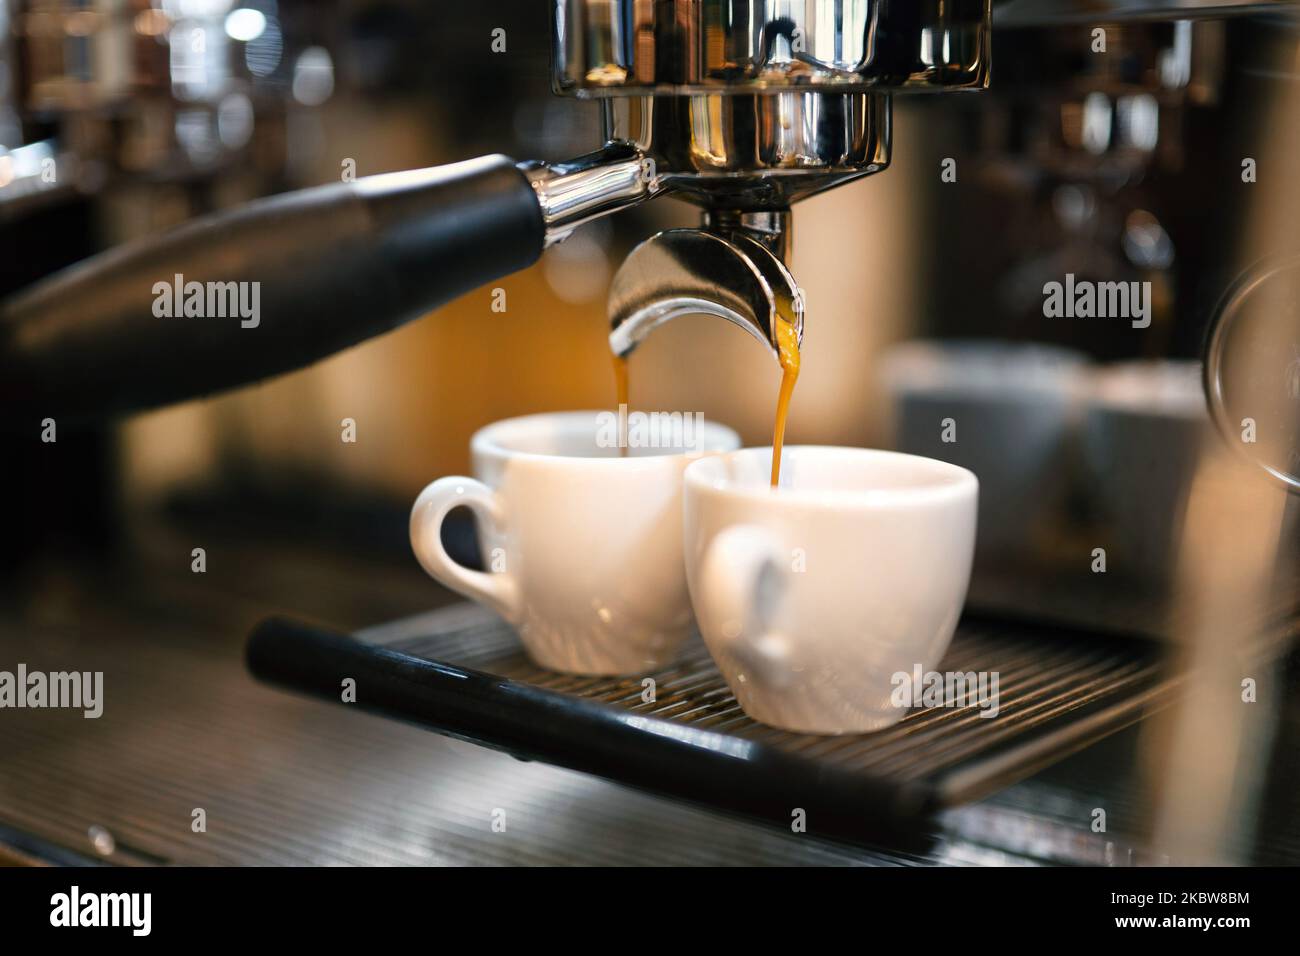 https://c8.alamy.com/comp/2KBW8BM/espresso-coffee-flows-from-a-portafilter-coffee-machine-into-two-white-espresso-cups-2KBW8BM.jpg